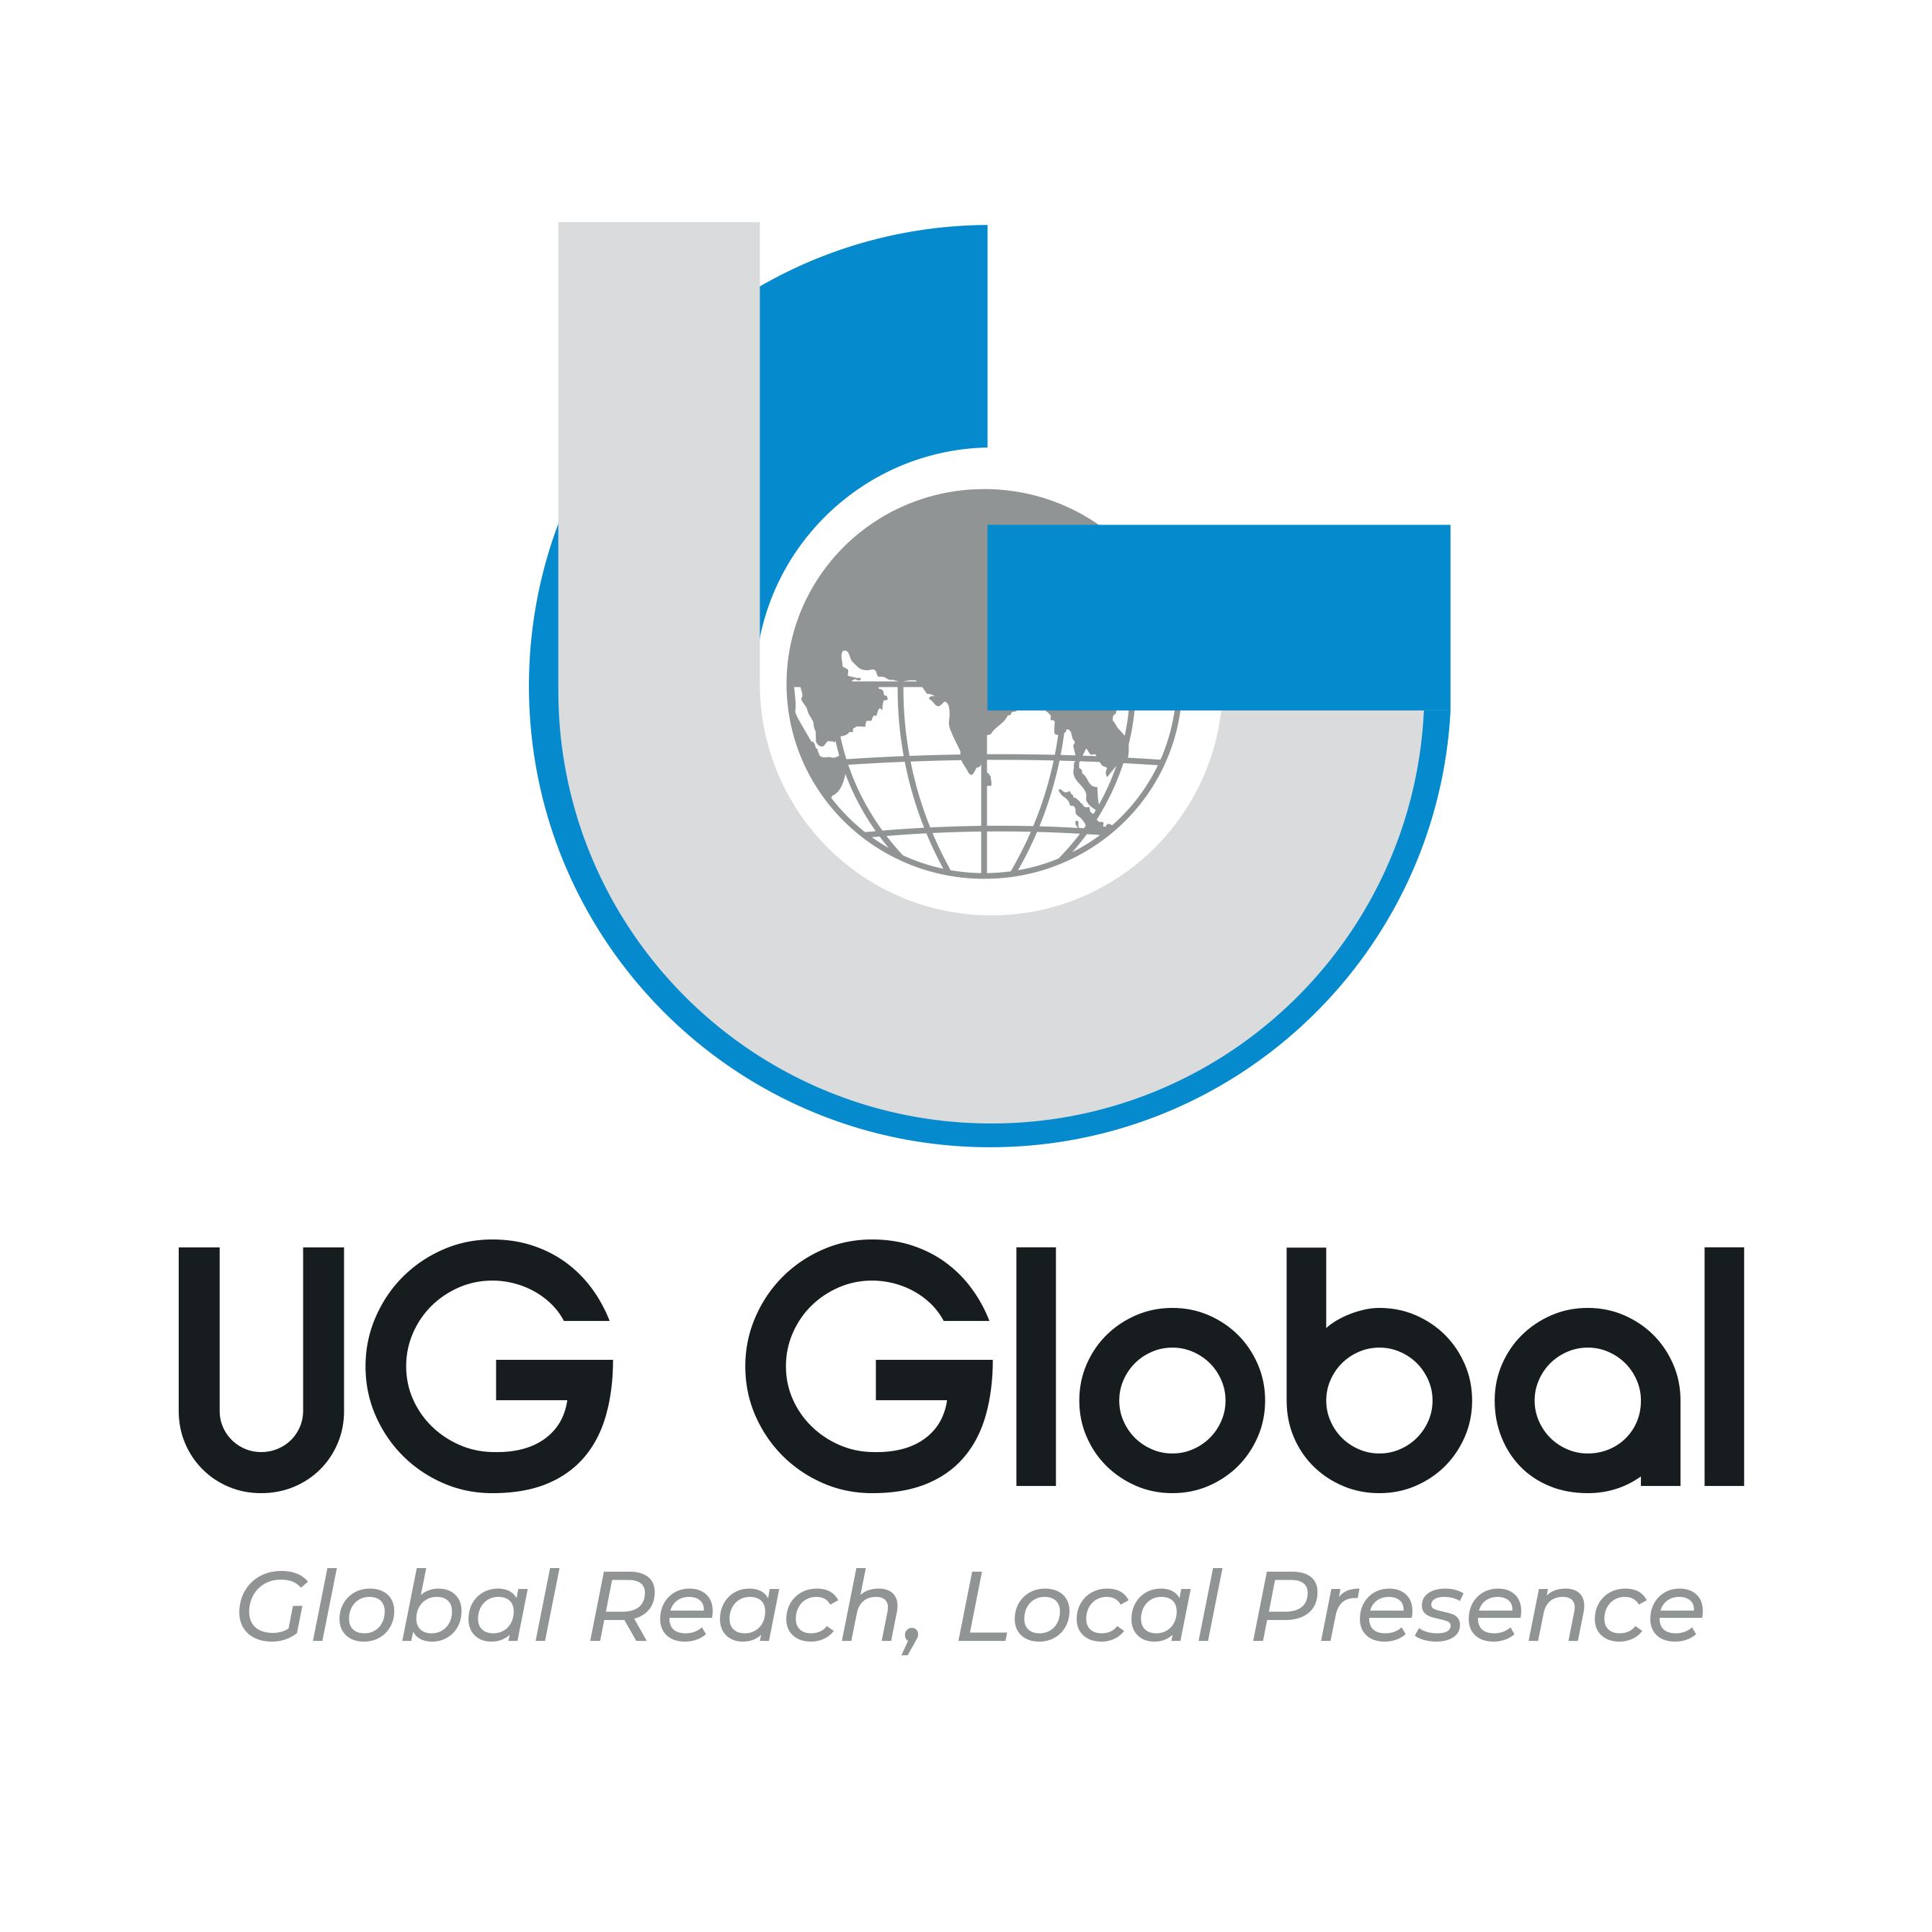 https://ugglobal.net/wp-content/uploads/2022/03/UGGlobal-logo.png